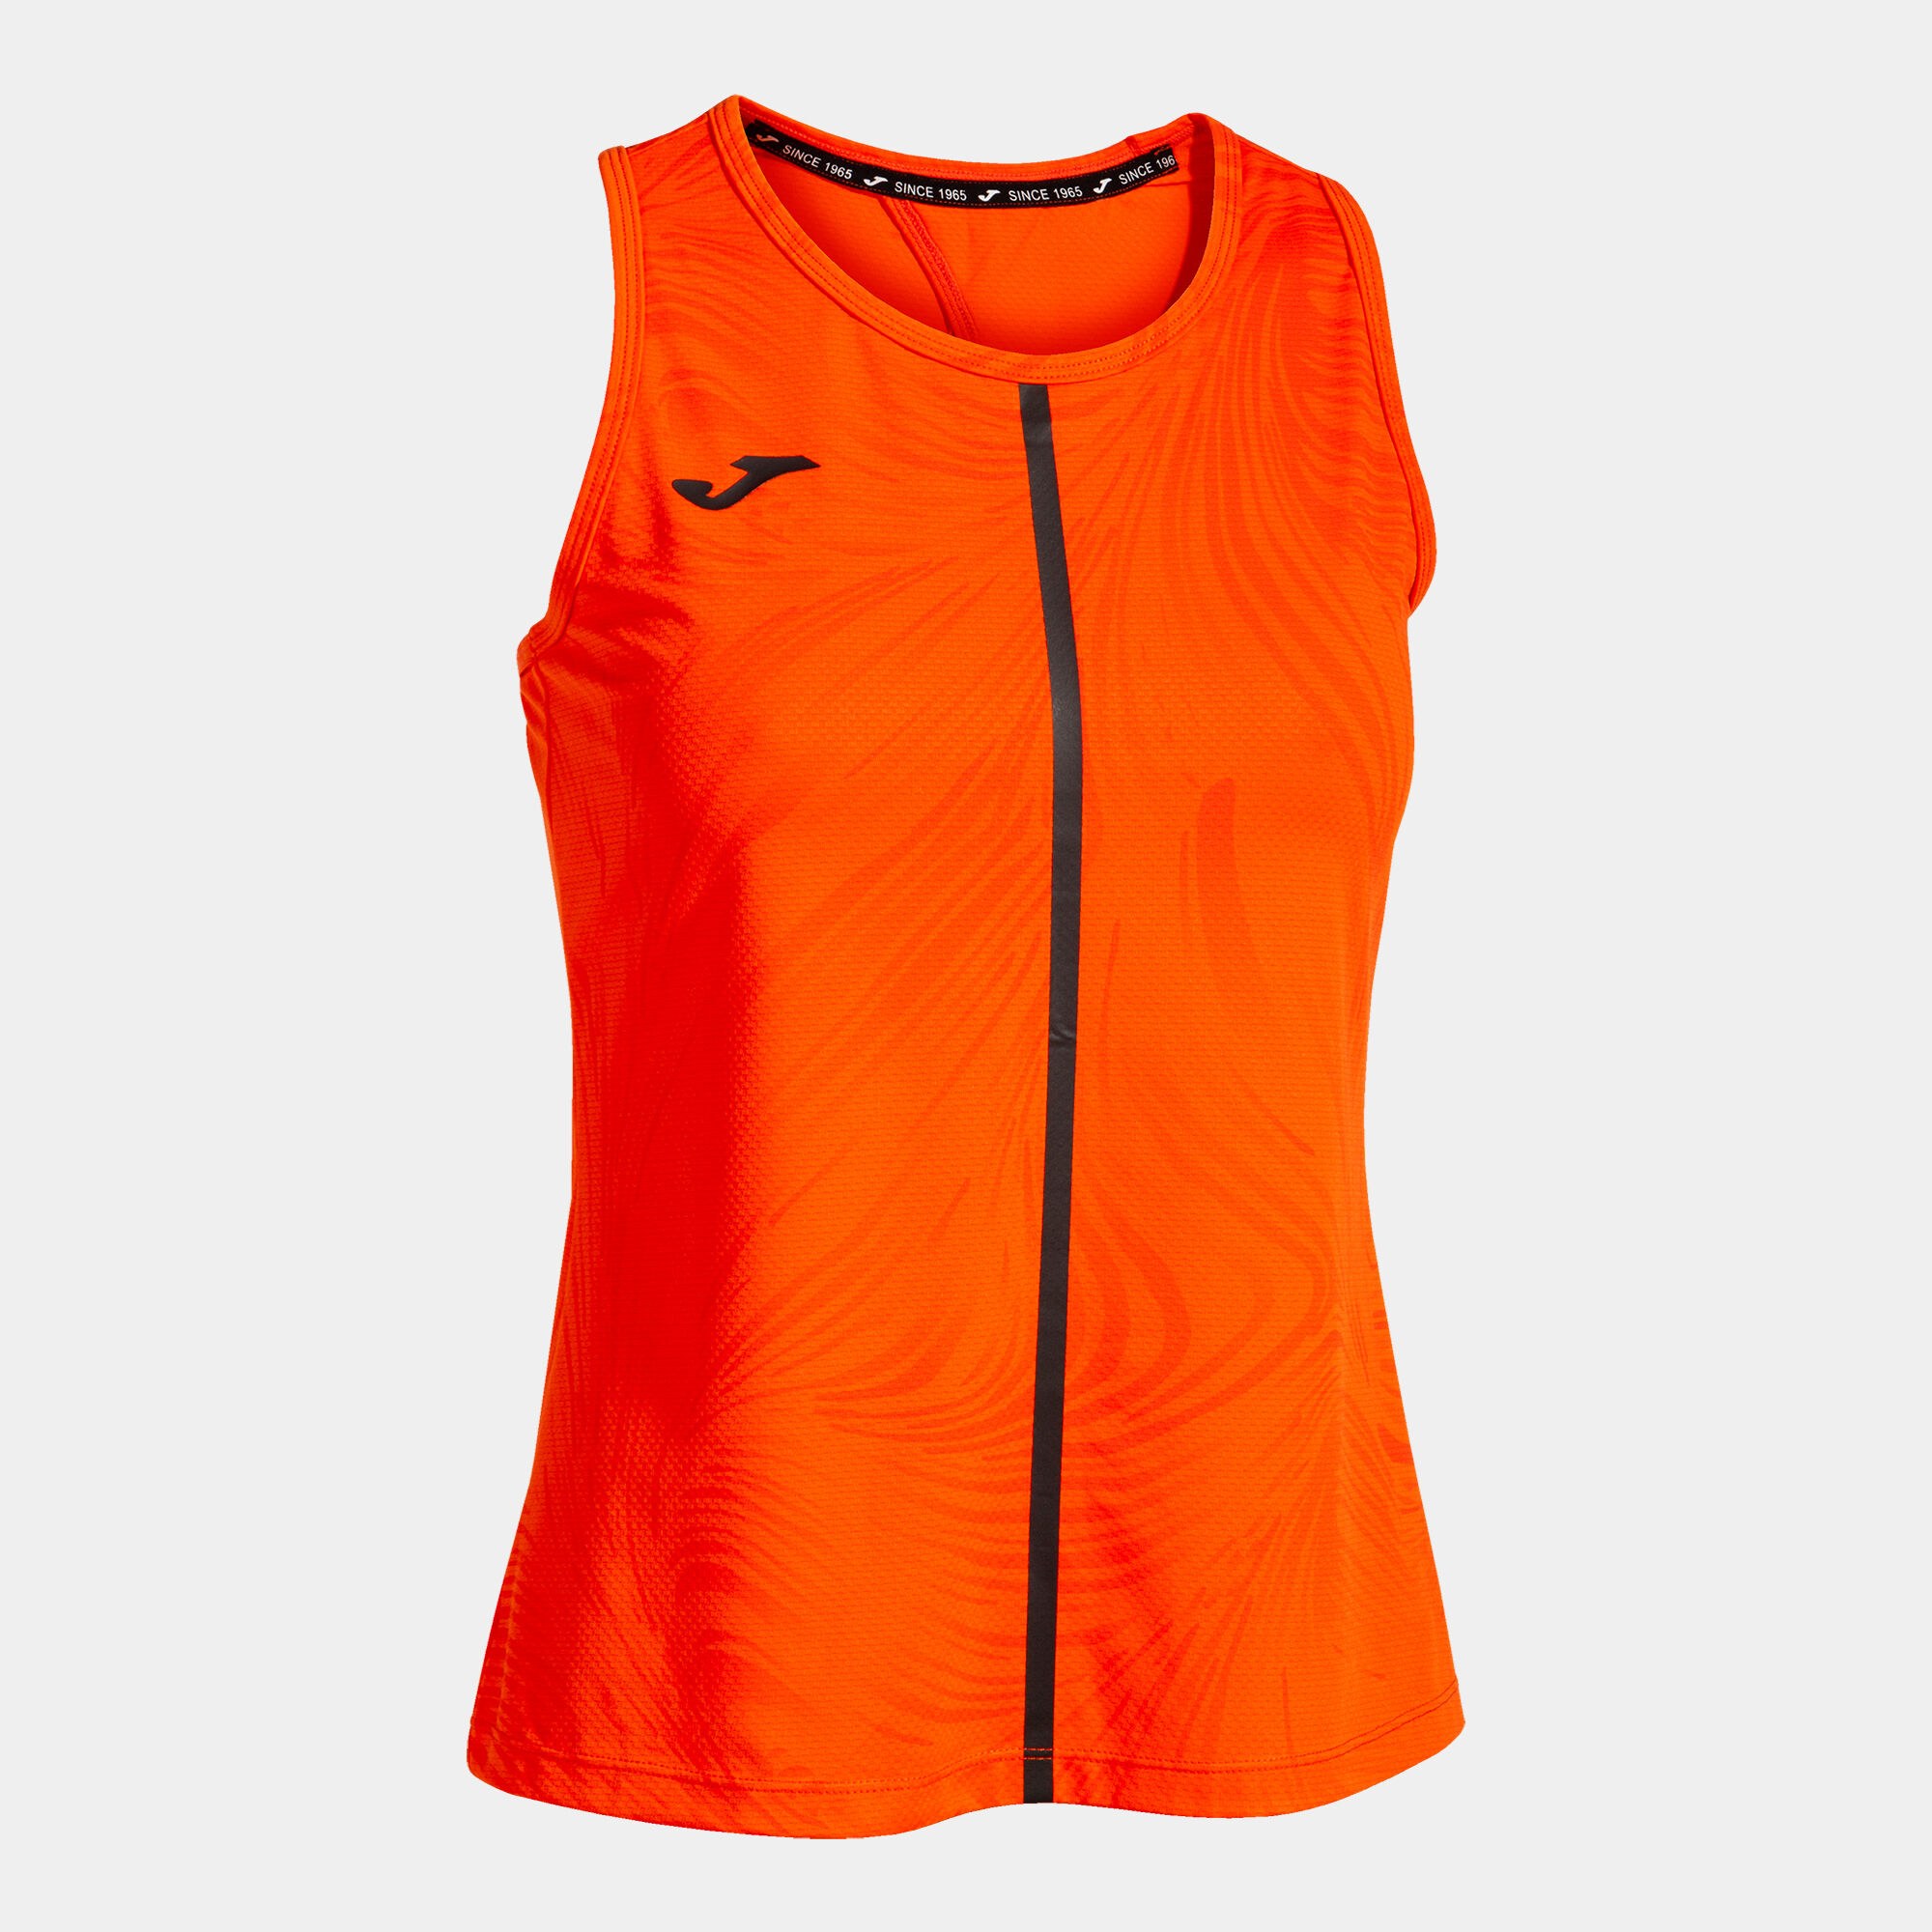 Camiseta sin mangas mujer Challenge naranja